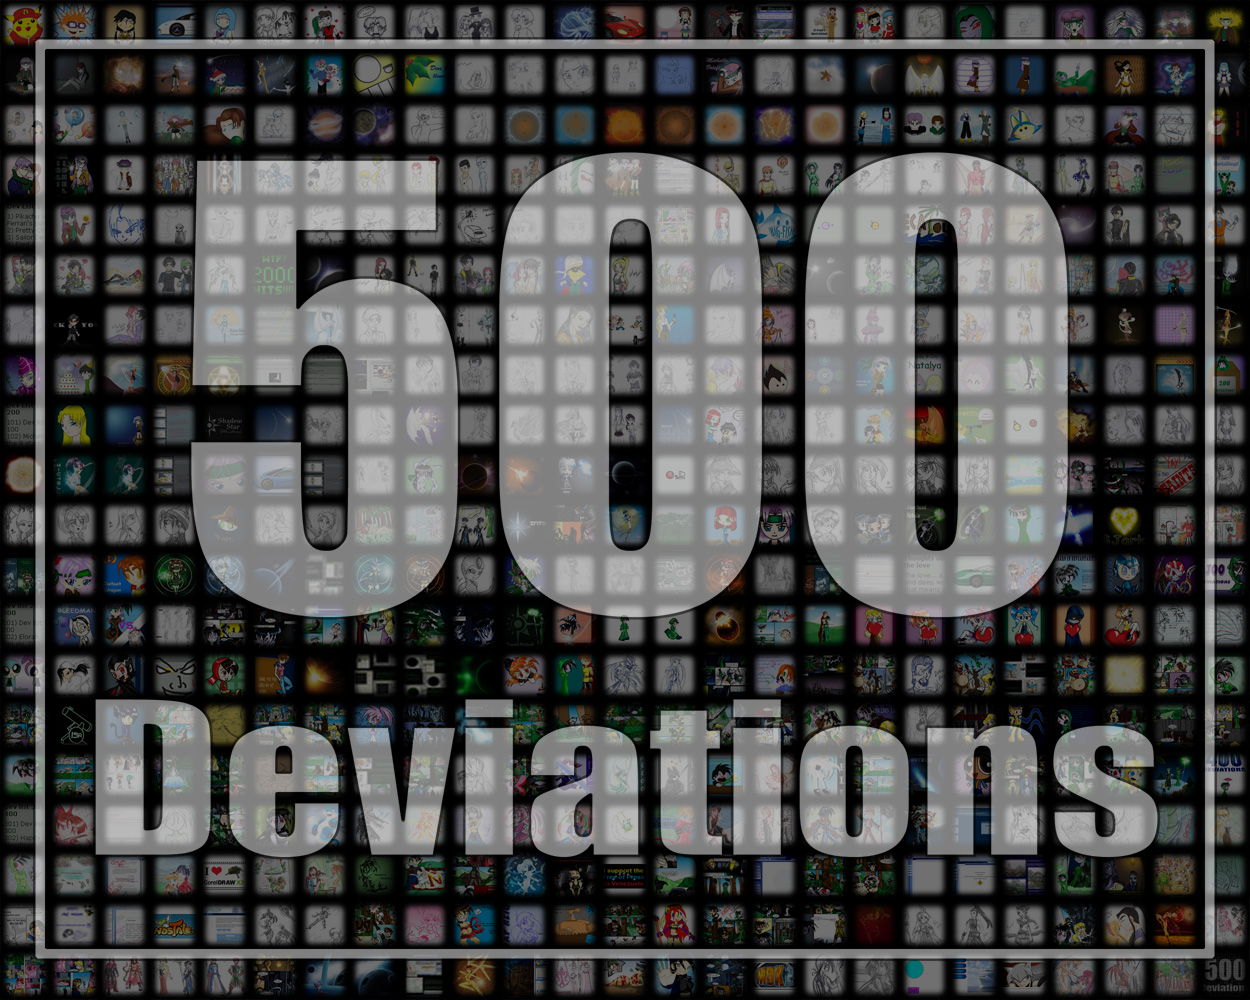 500 DEVIATIONS